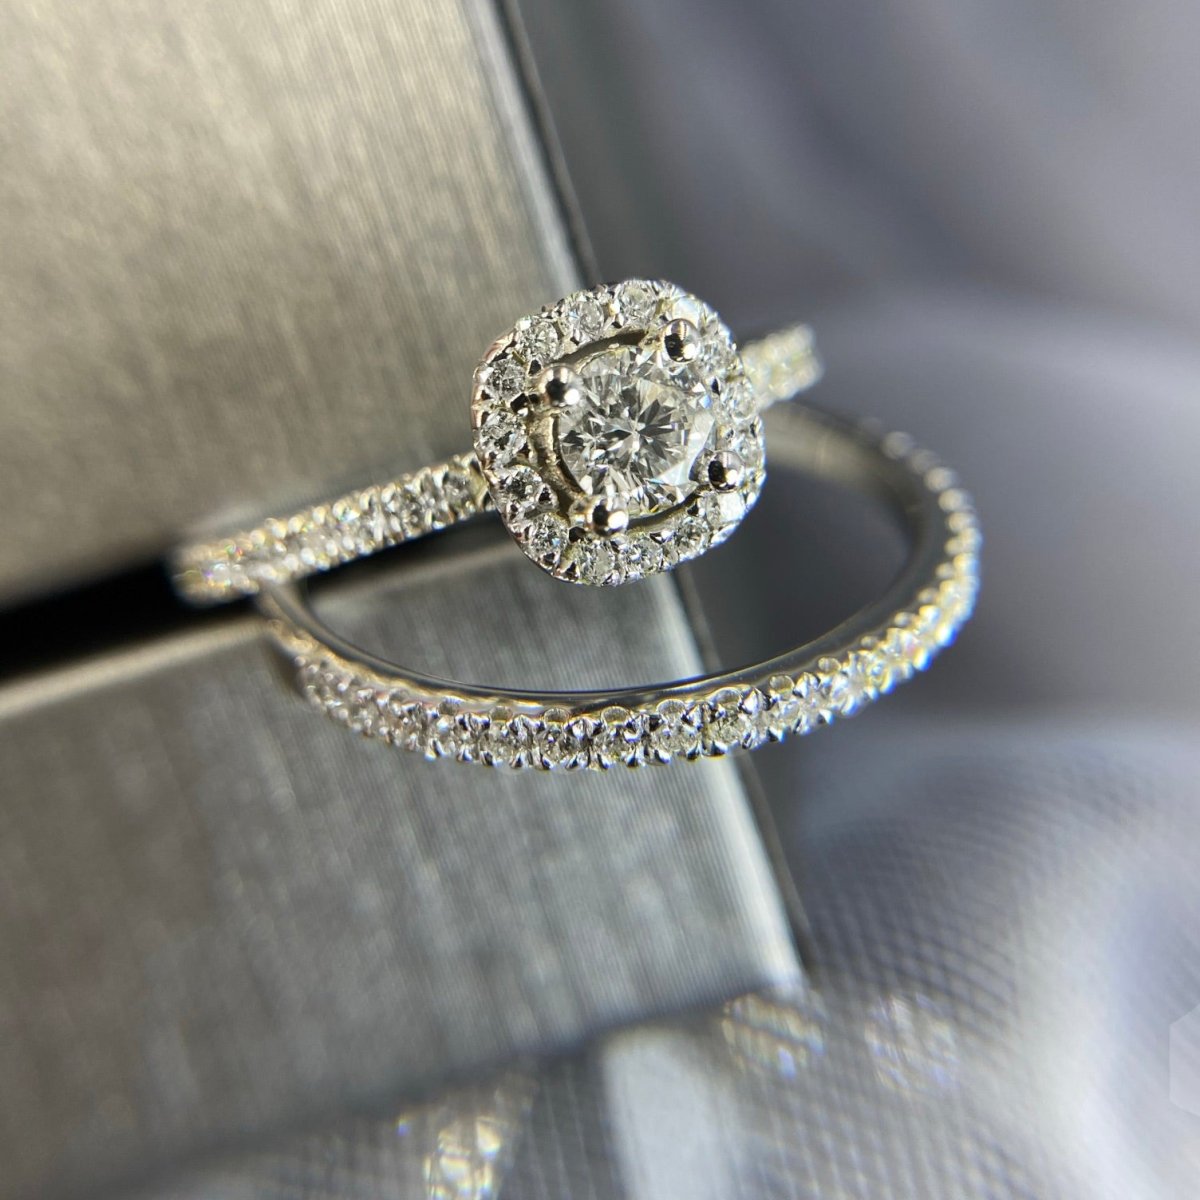 Authentic 1.00CT Round Cut Diamond Bridal Set in Platinum - Primestyle.com